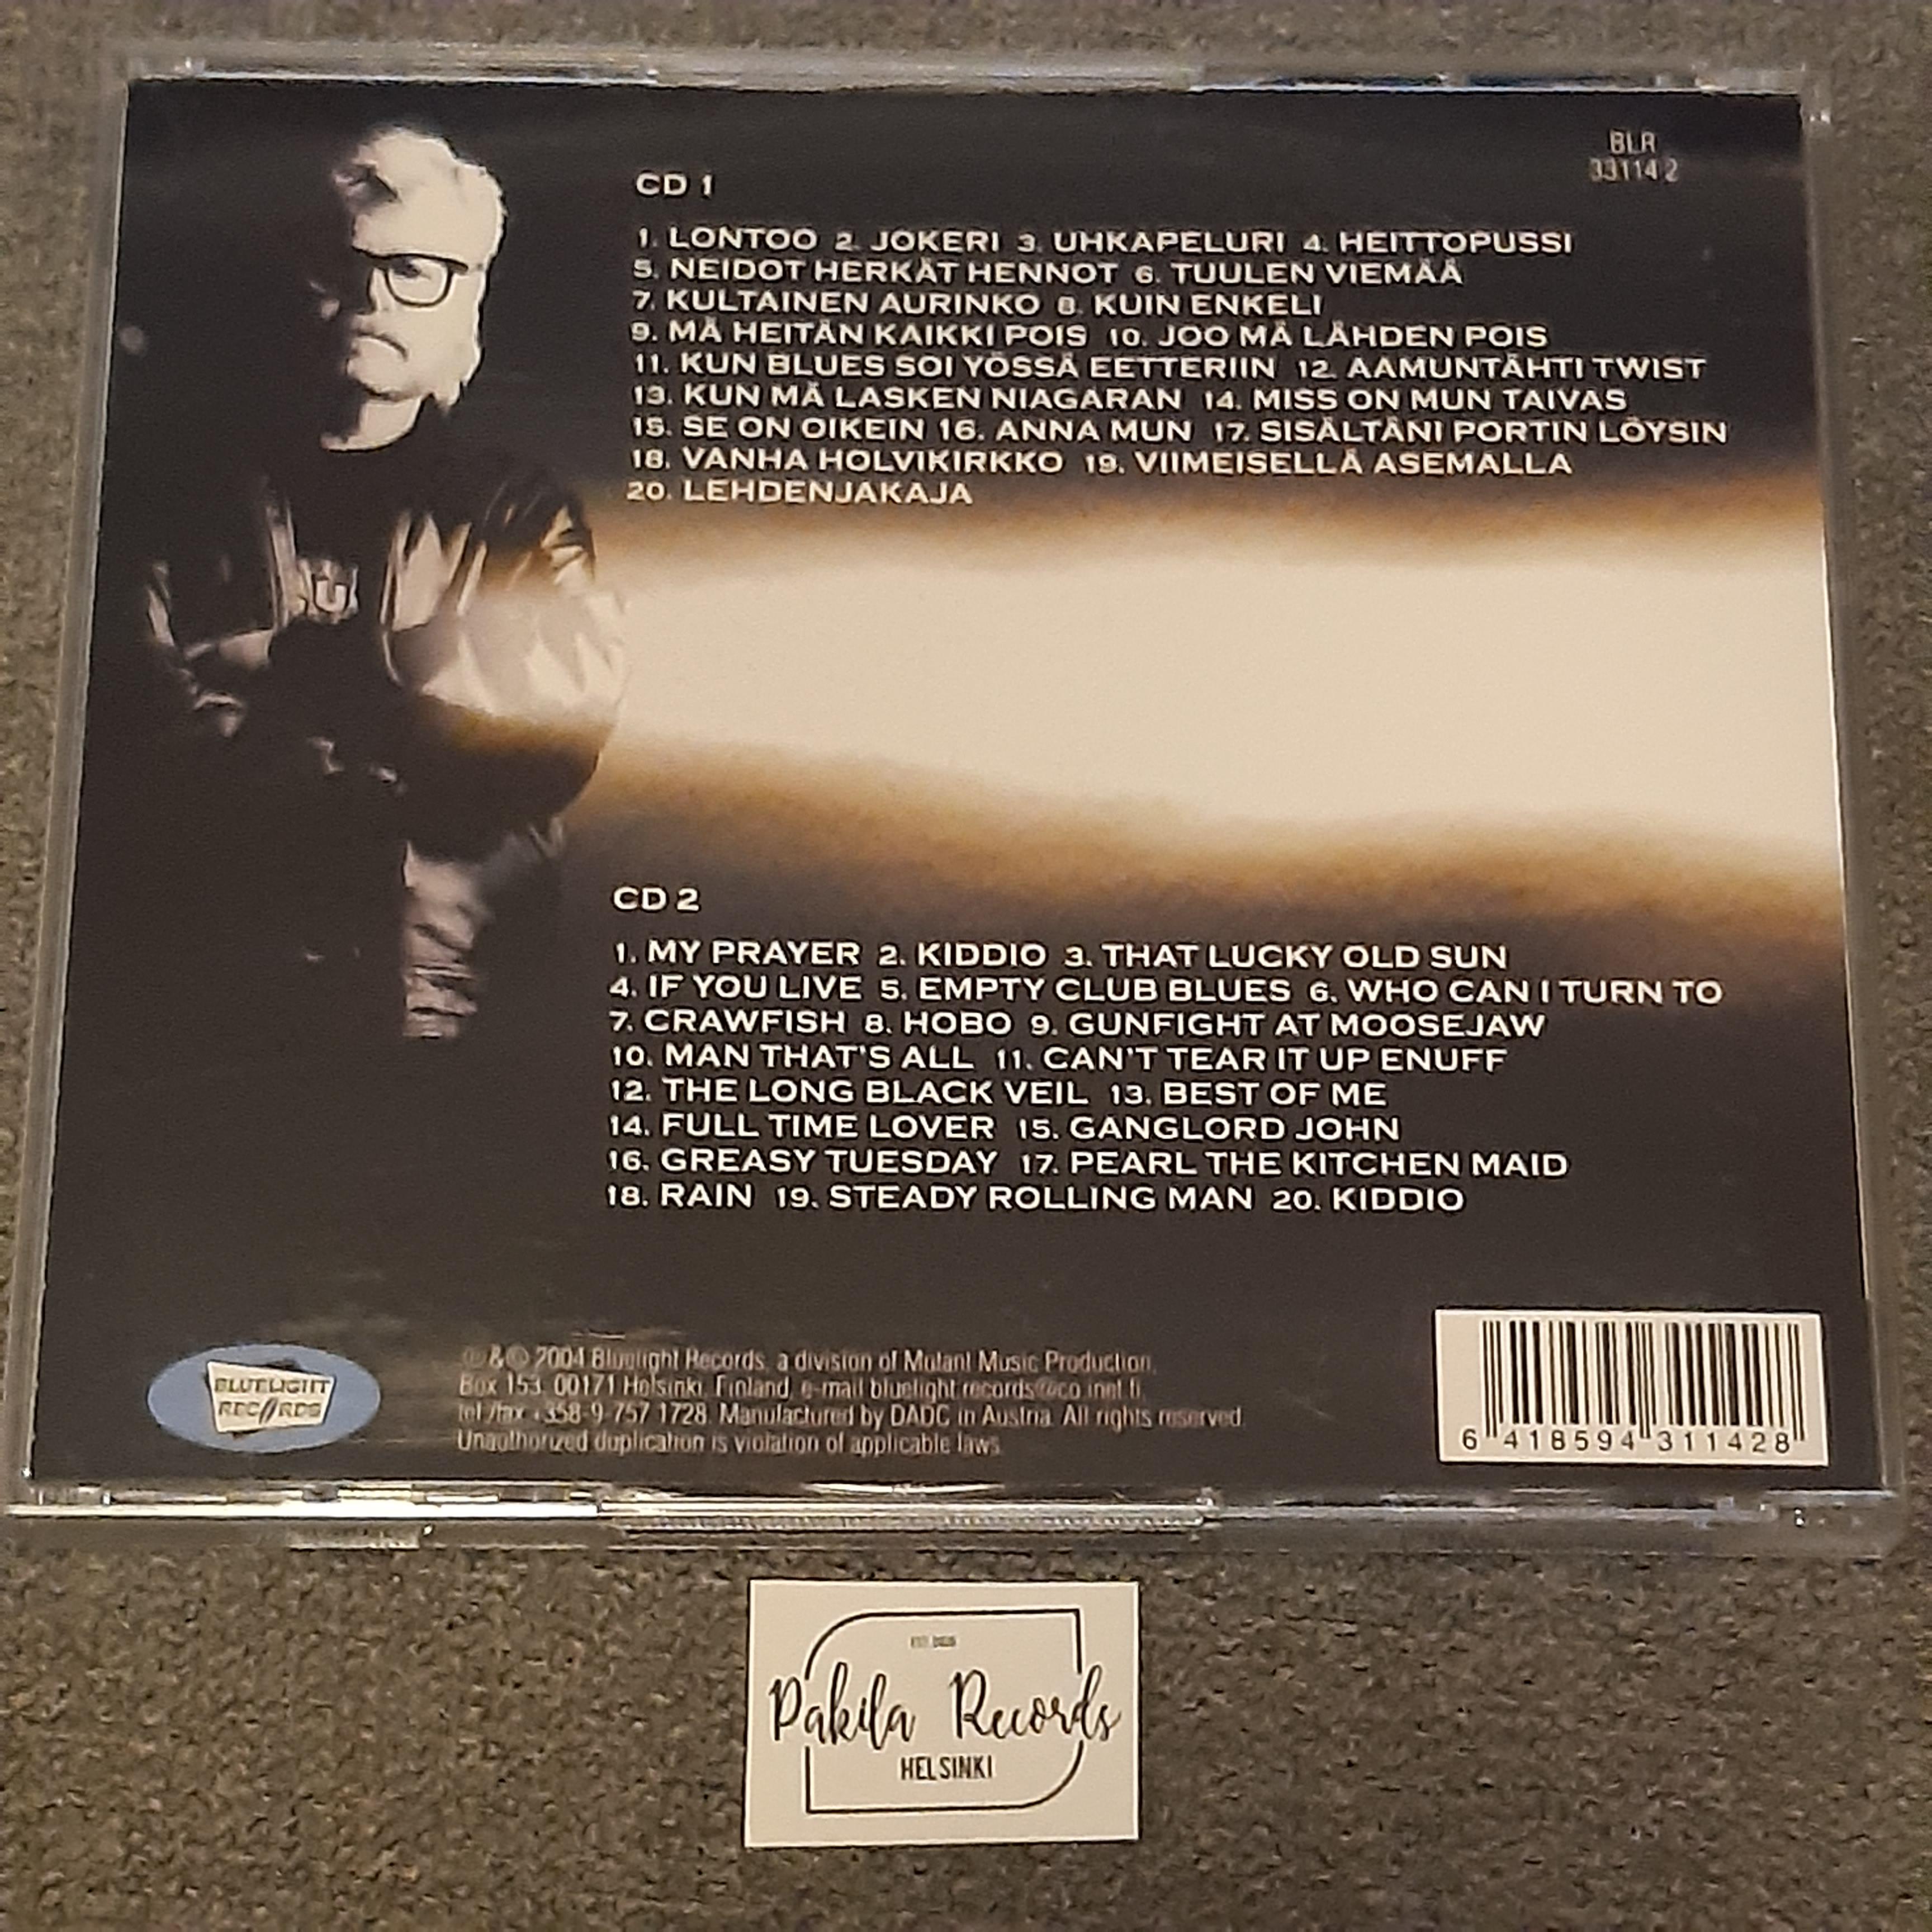 Eero Raittinen - Uhkapeluri, Eero Raittinen 60 - 2 CD (käytetty)